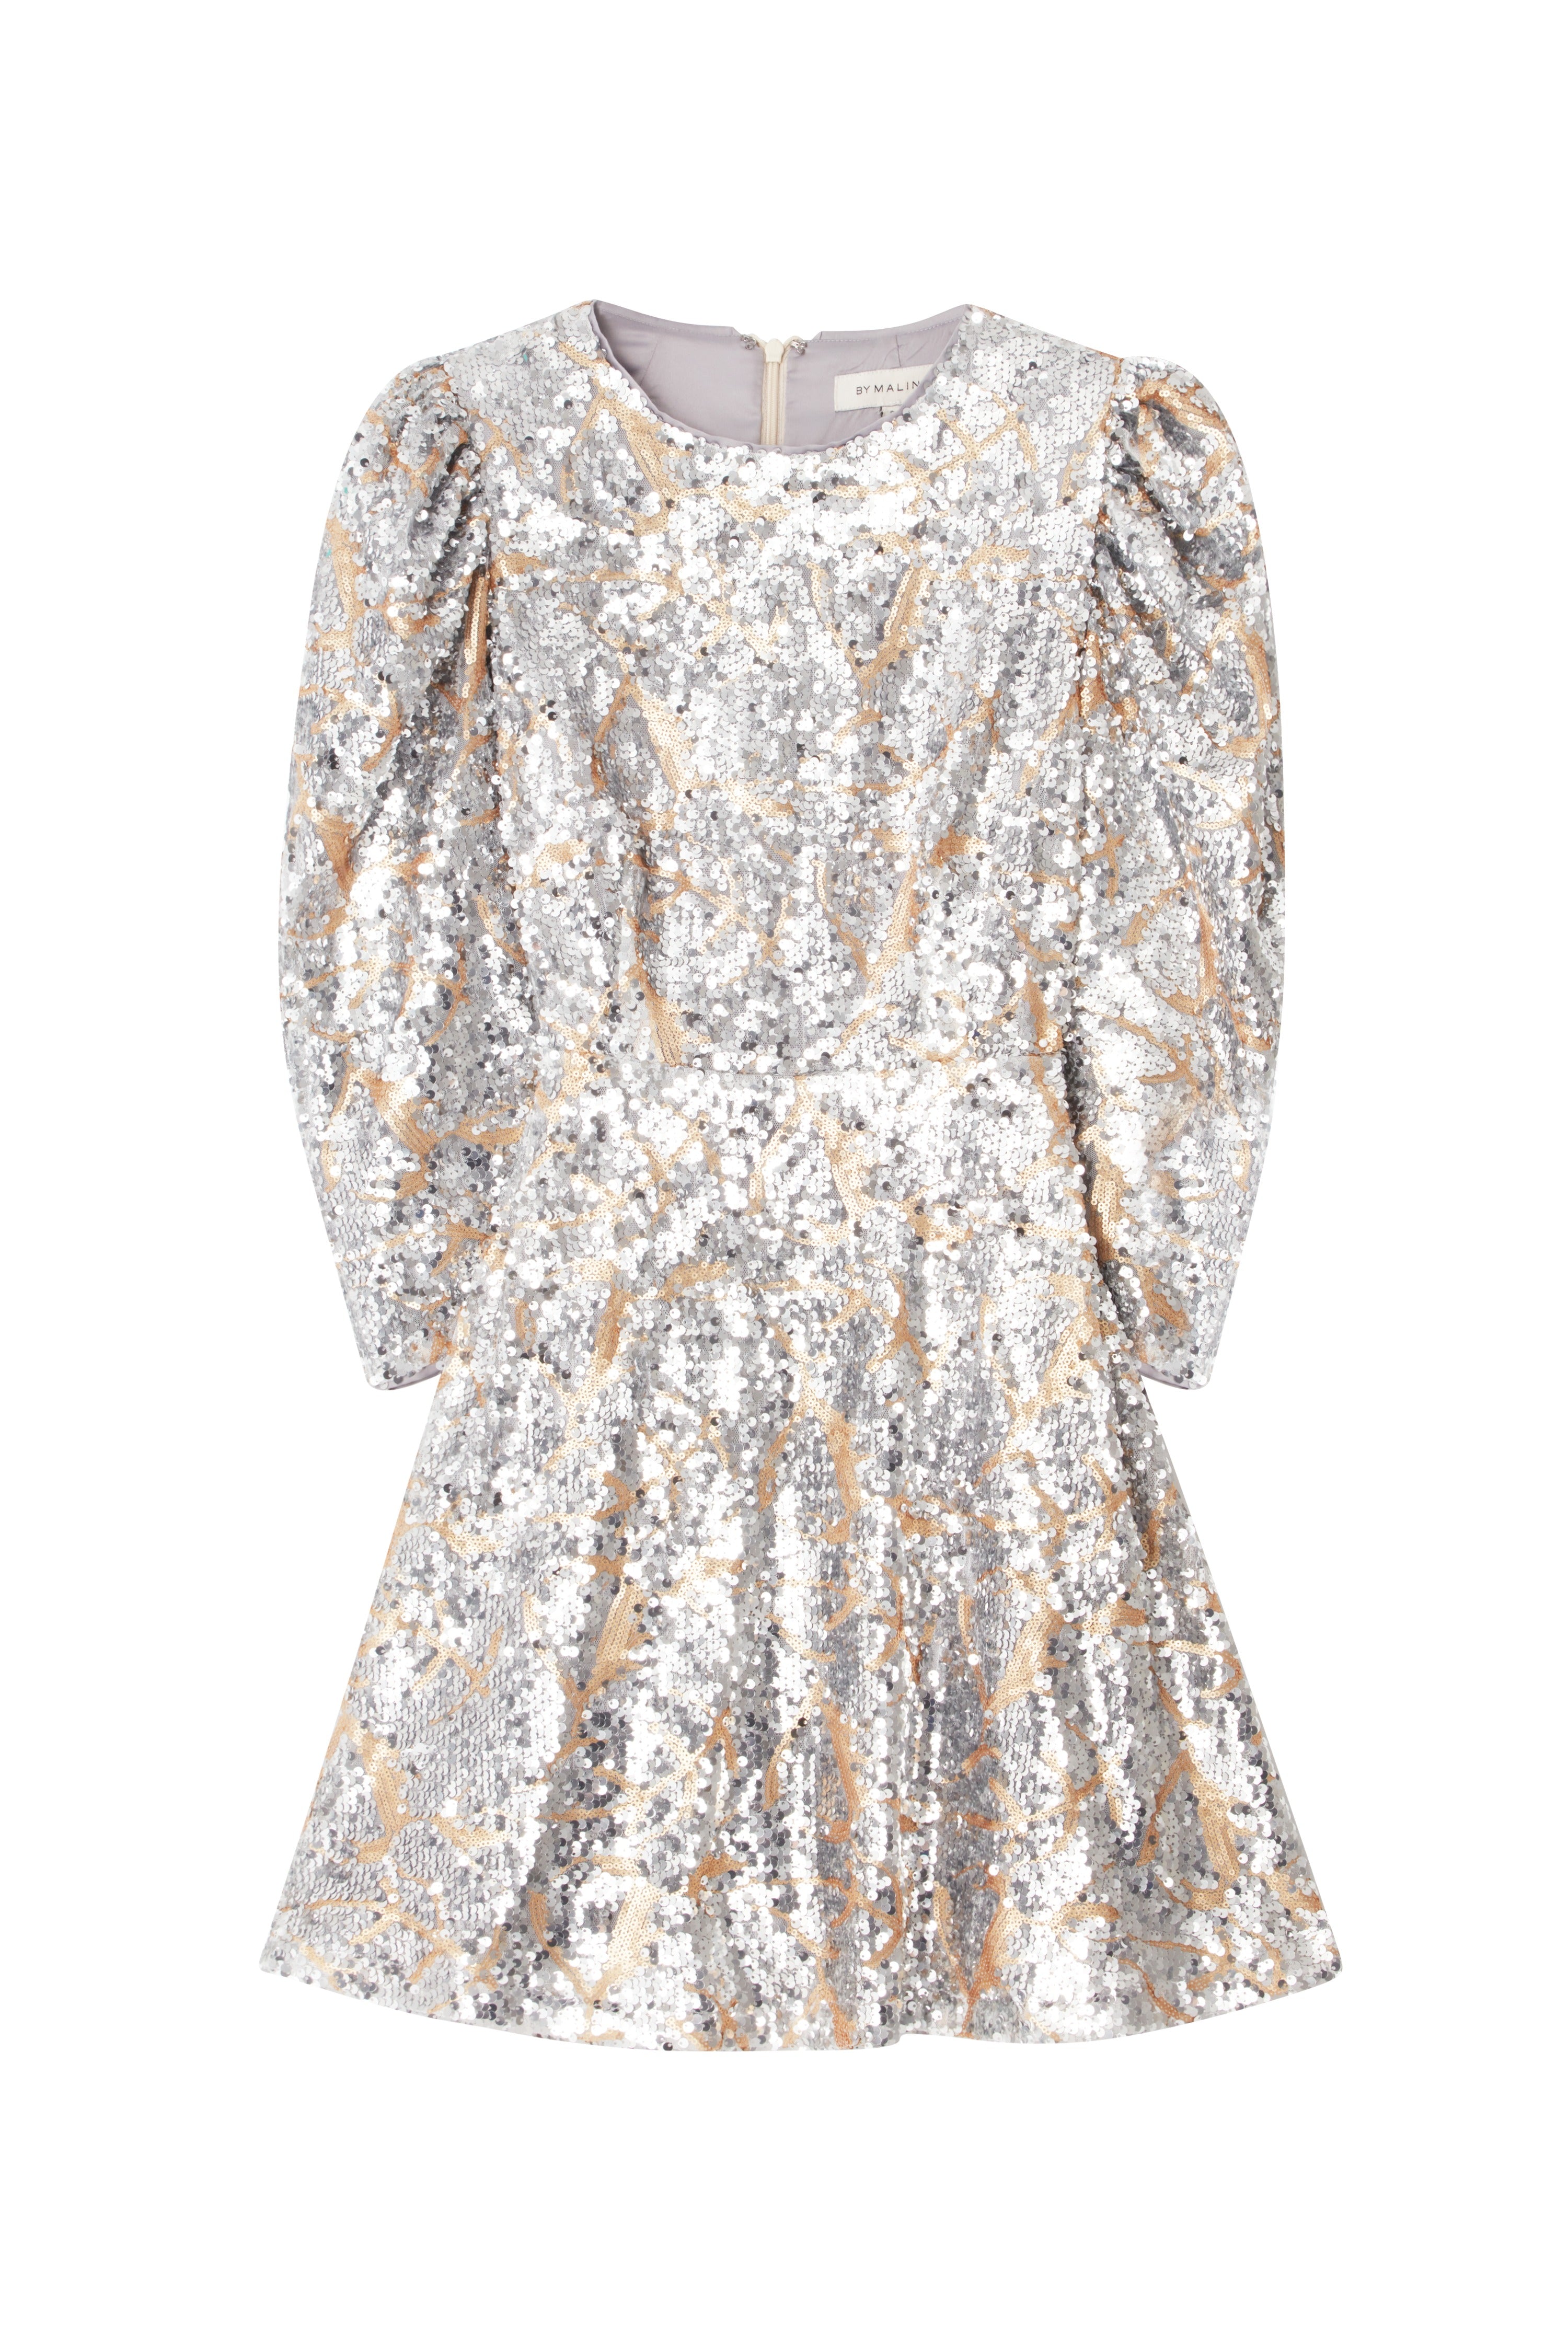 Hollis Sequin Dress - Stone Grey Sequin